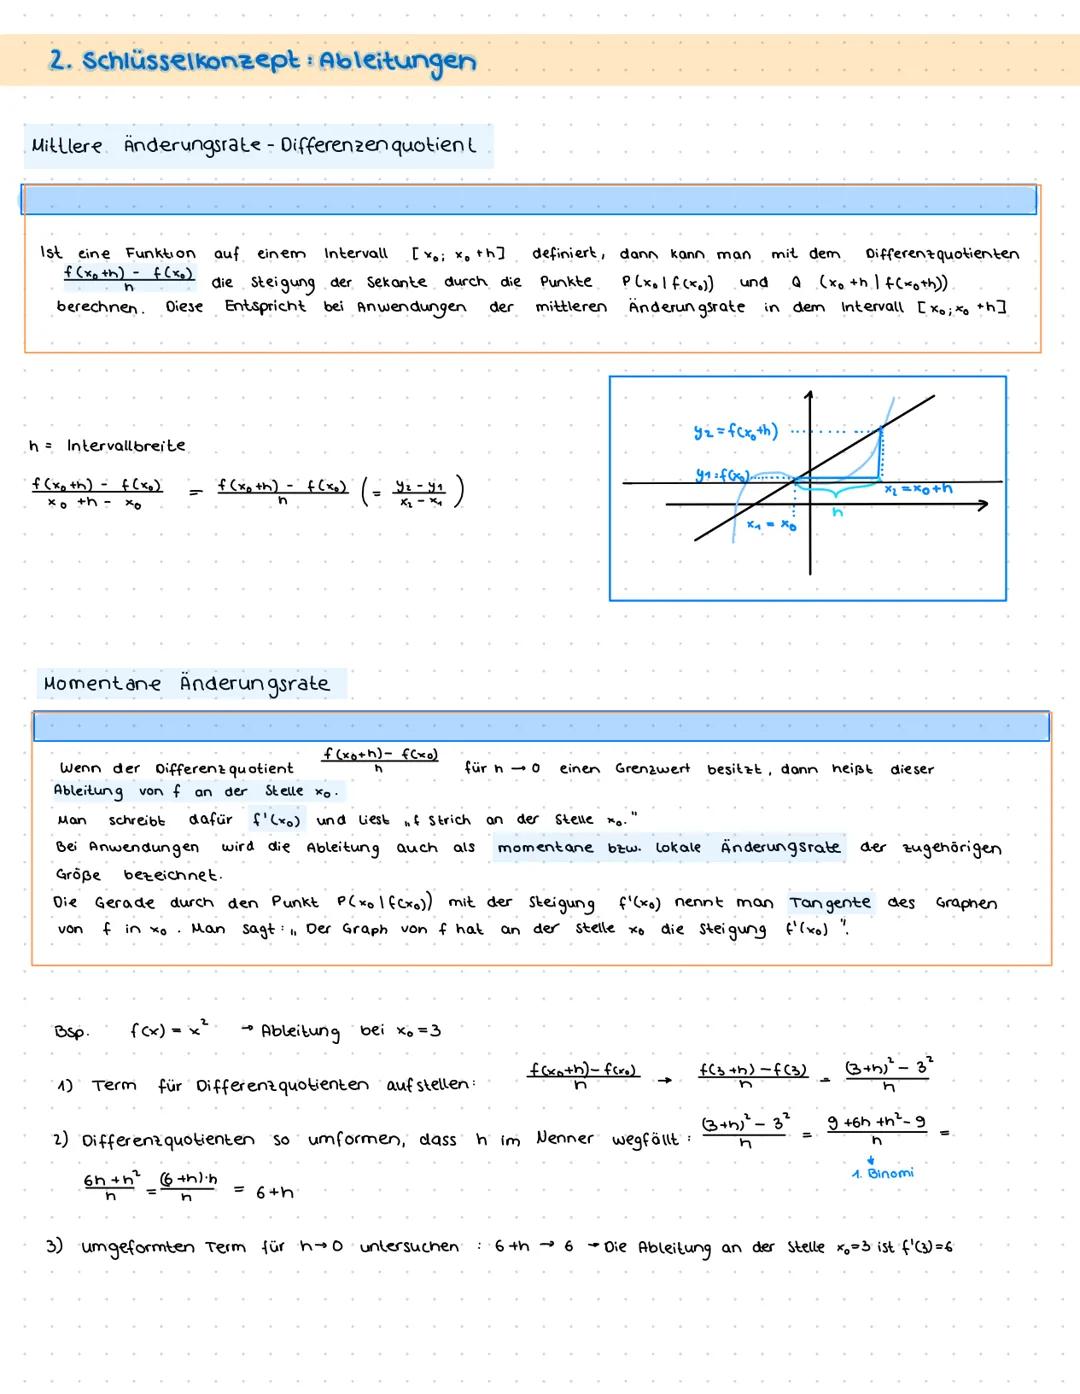 THEMENÜBERSICHT:
.
ZENTRALKLAUSUR
.
1. Funktionen
Potenzgesetze / Potenzfunktionen
Ganzrationale Funktionen
Symmetrie, Nullstellen, etc.
Exp